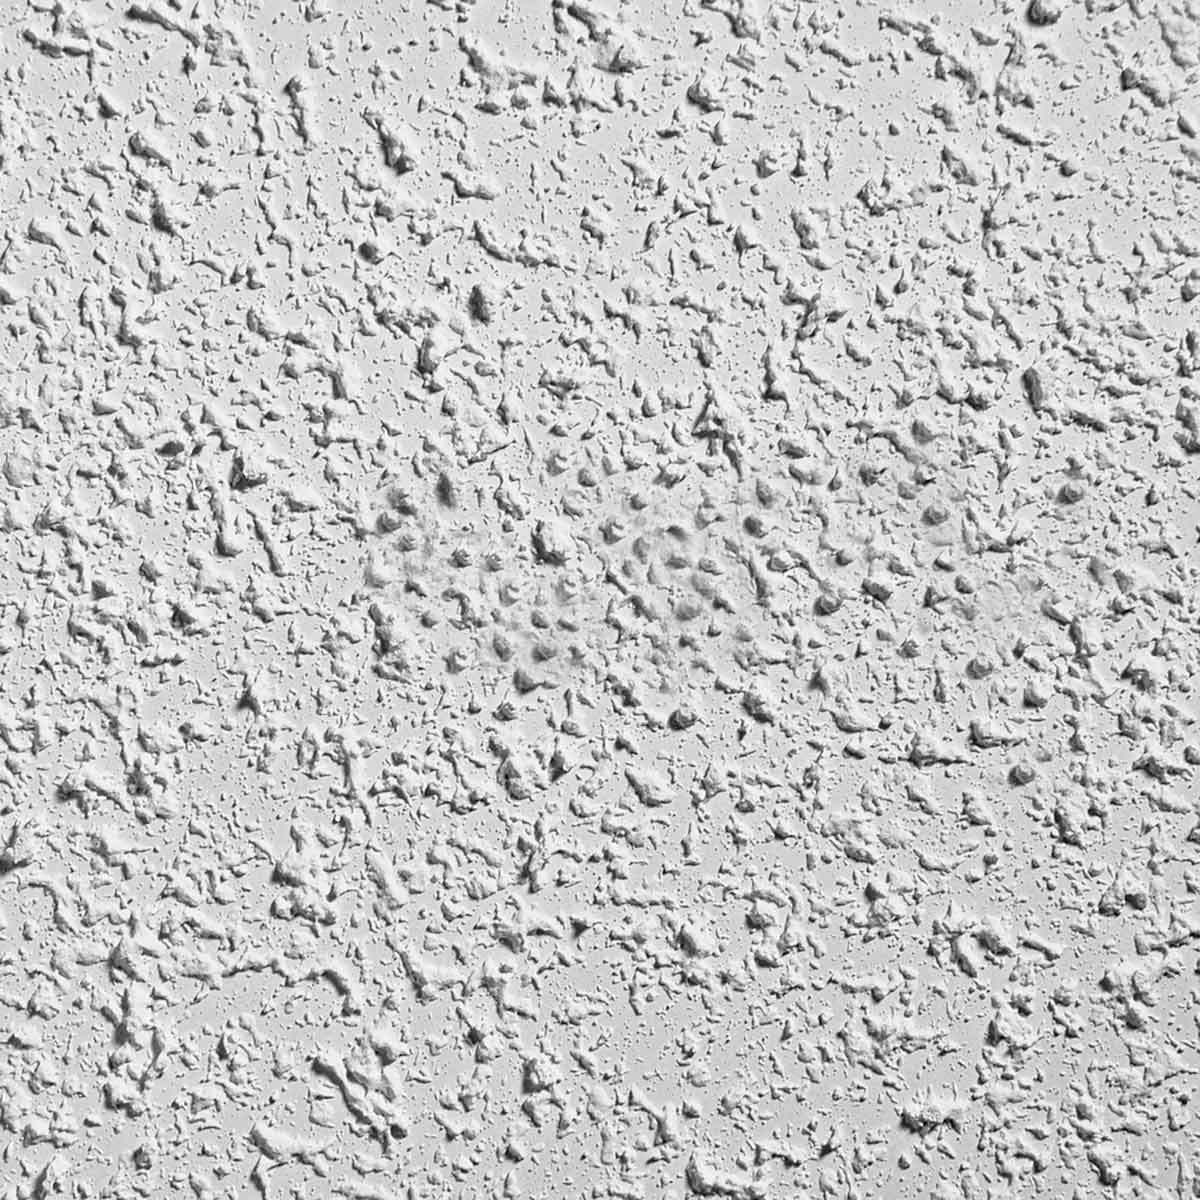 Knockdown Texture Sponge, 3 Pack Drywall Texture Patch Sponge, Ceiling Texture Sponge for Drywall Patch, Drywall Repair, DIY Painting Ceiling